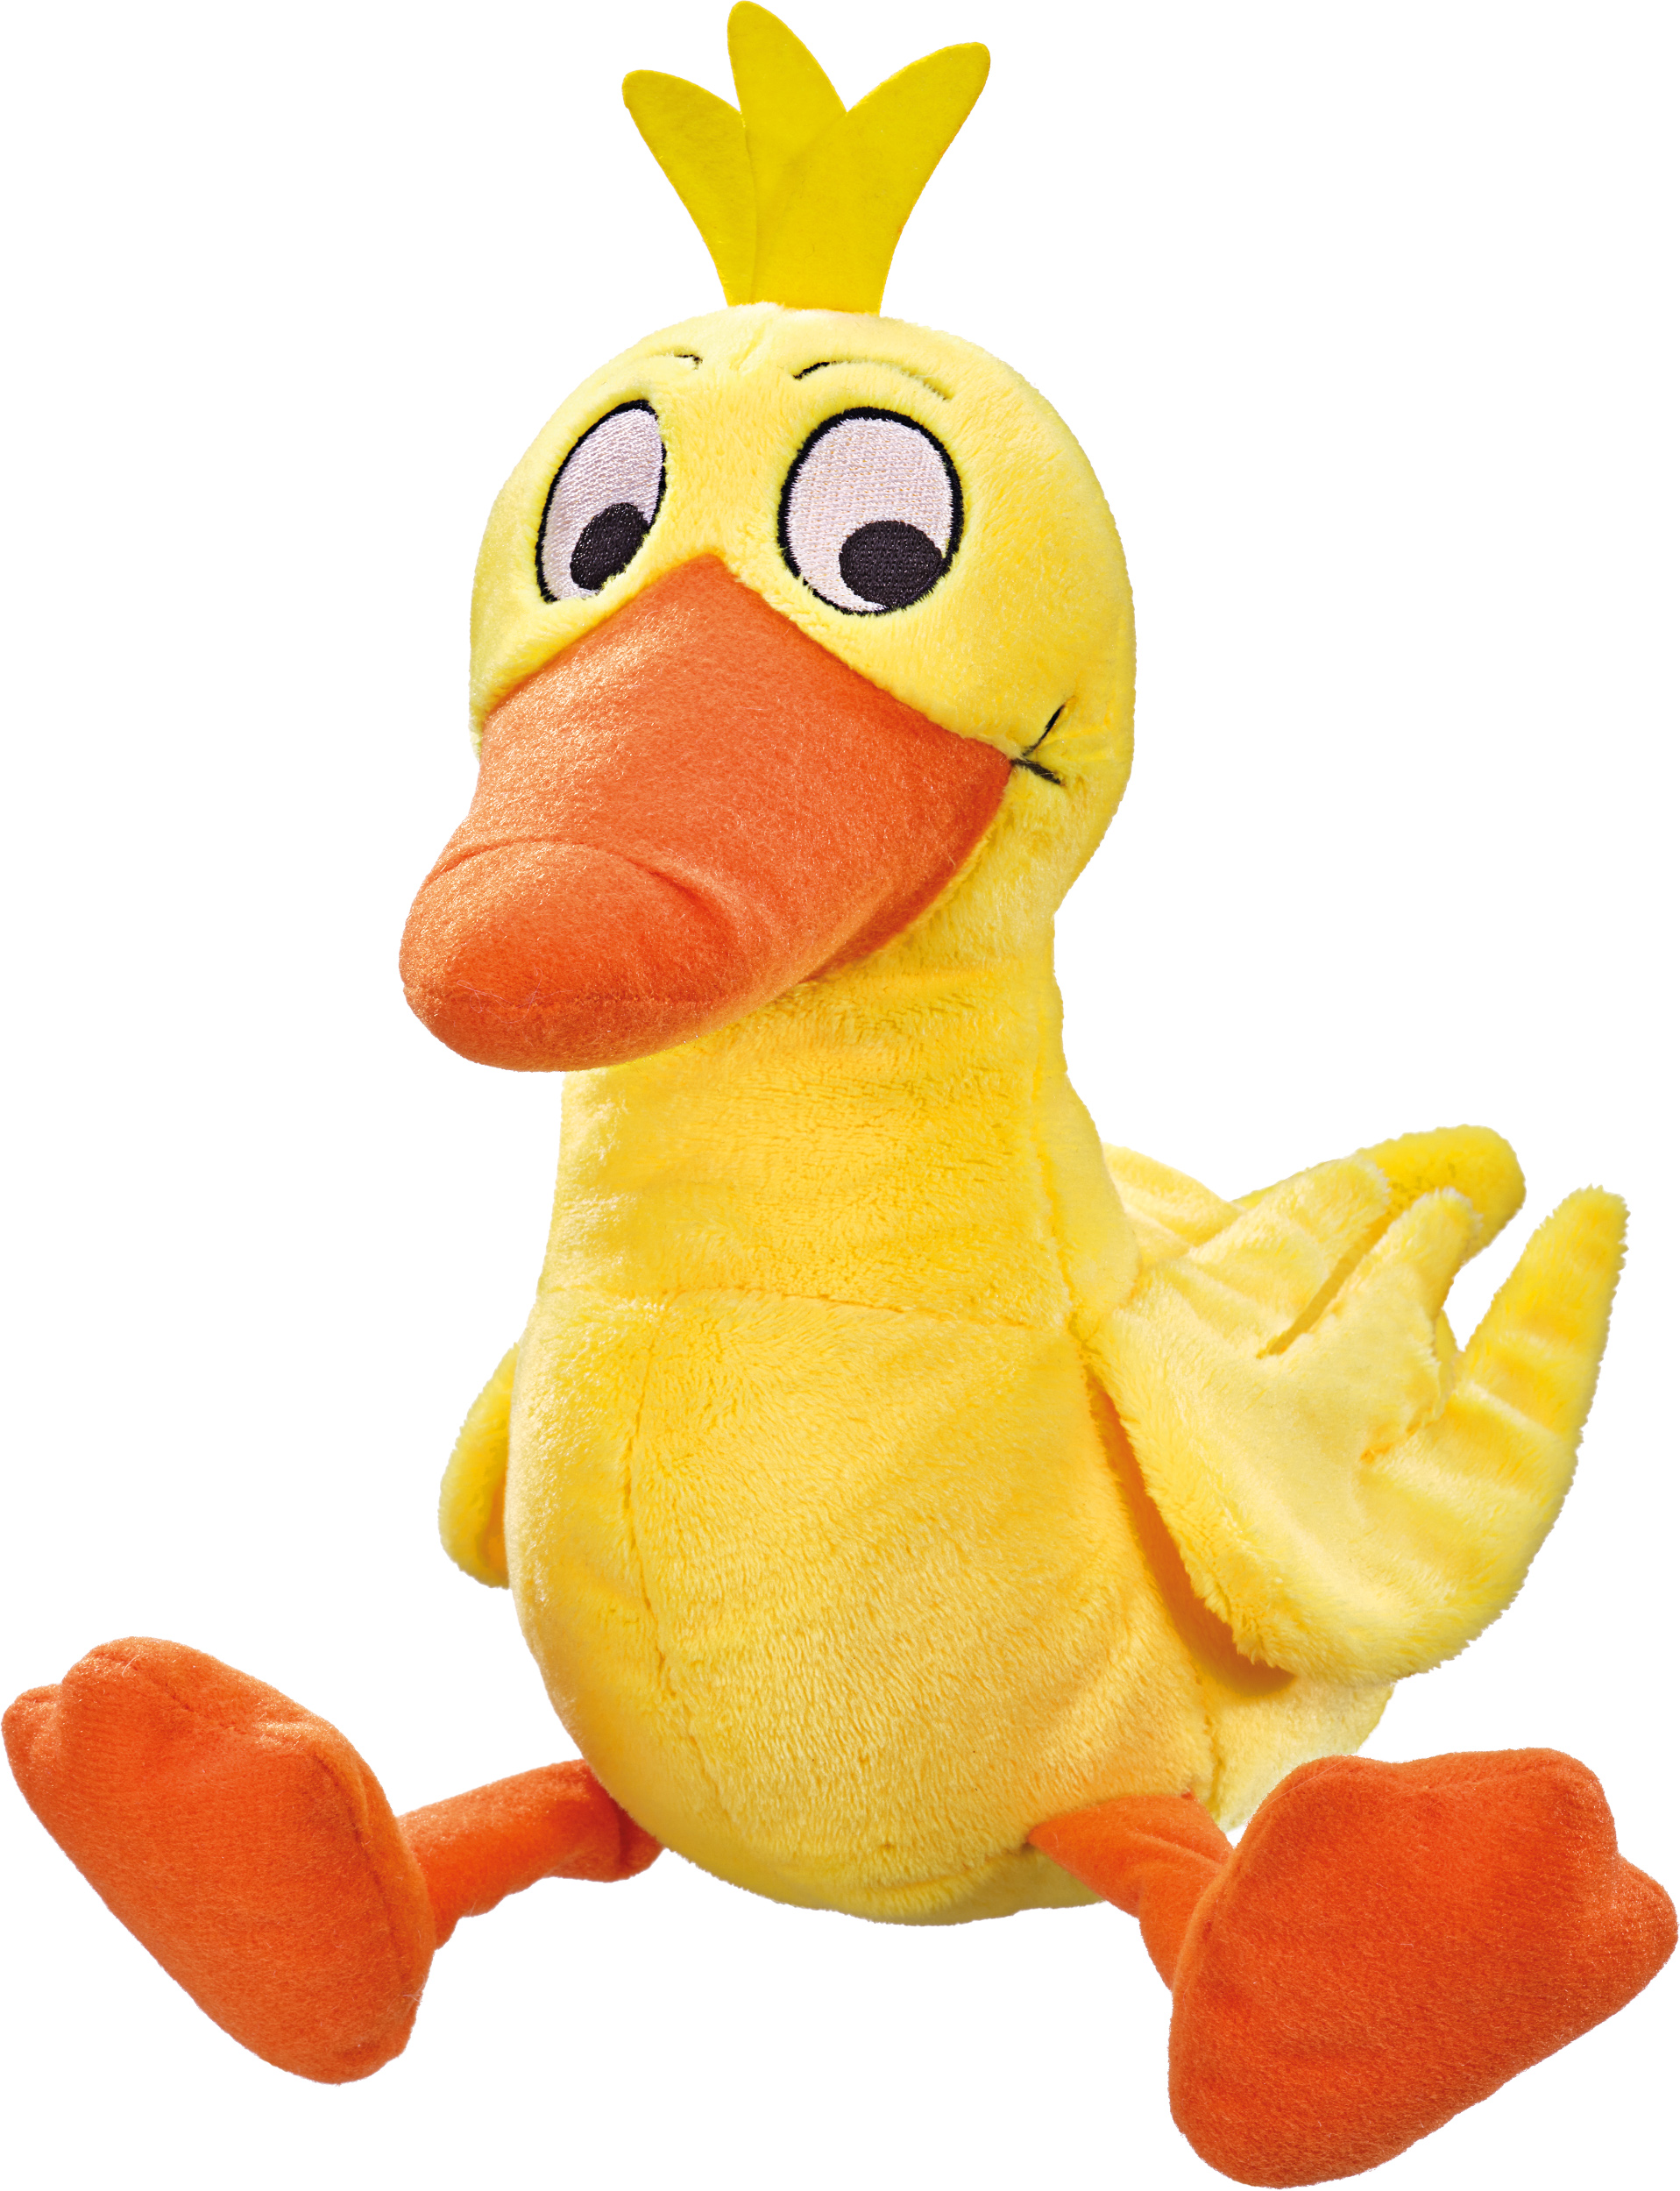 Uni-Toys - Ente mit Stimme - 16 cm (Länge) - Plüsch-Vogel - Plüschtier,  Kuscheltier